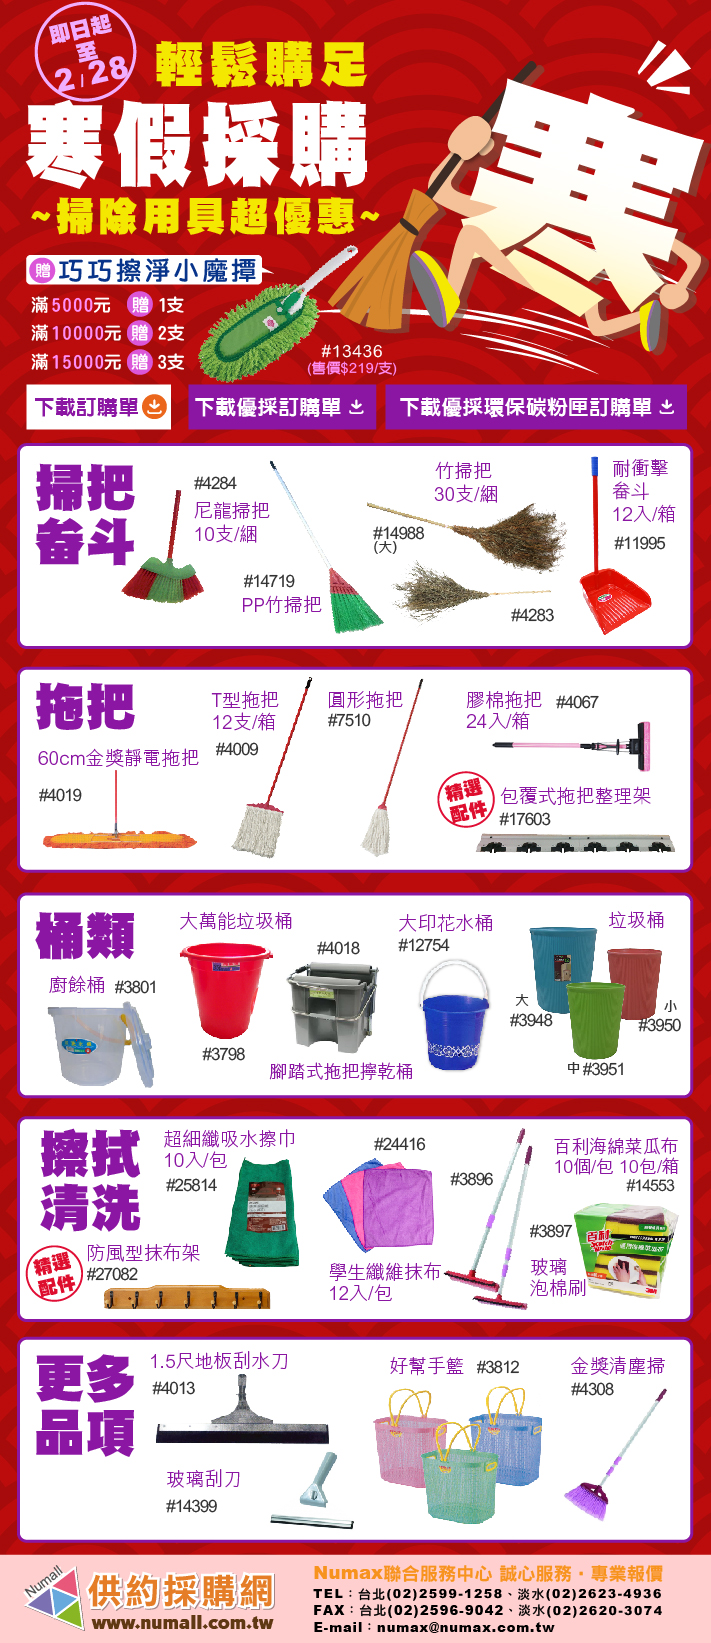 老師新年好~寒假到開學前的掃具幫您輕鬆一次購足，開心過好年!